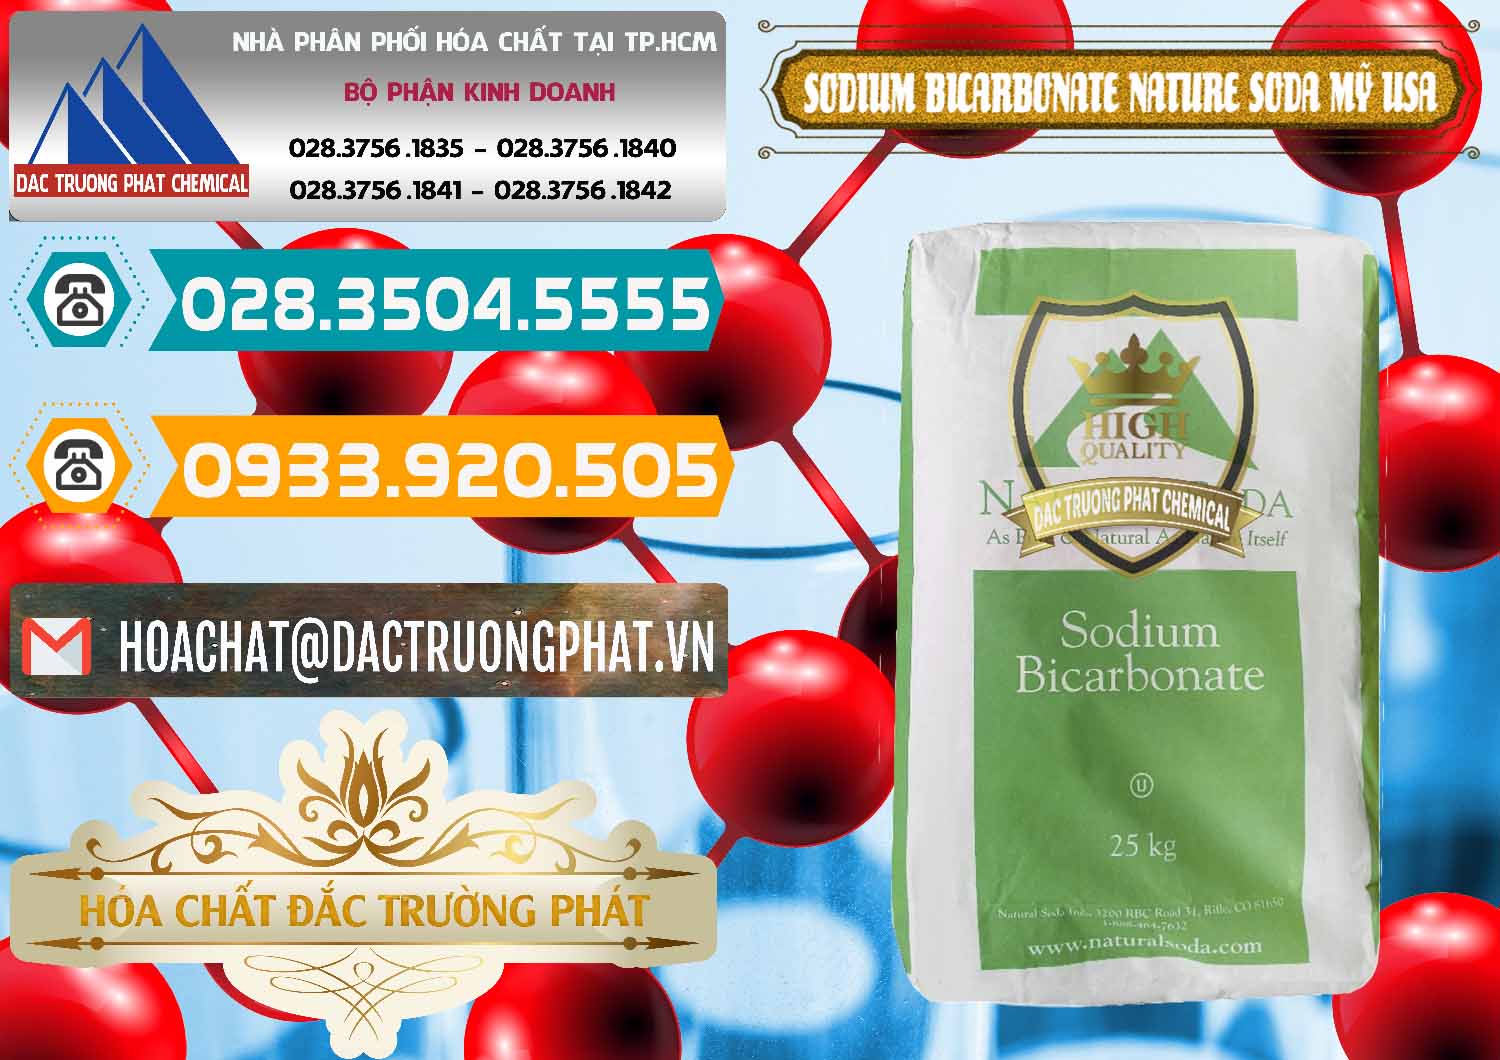 Công ty chuyên kinh doanh _ bán Sodium Bicarbonate – Bicar NaHCO3 Food Grade Nature Soda Mỹ USA - 0256 - Cty chuyên bán và phân phối hóa chất tại TP.HCM - congtyhoachat.vn